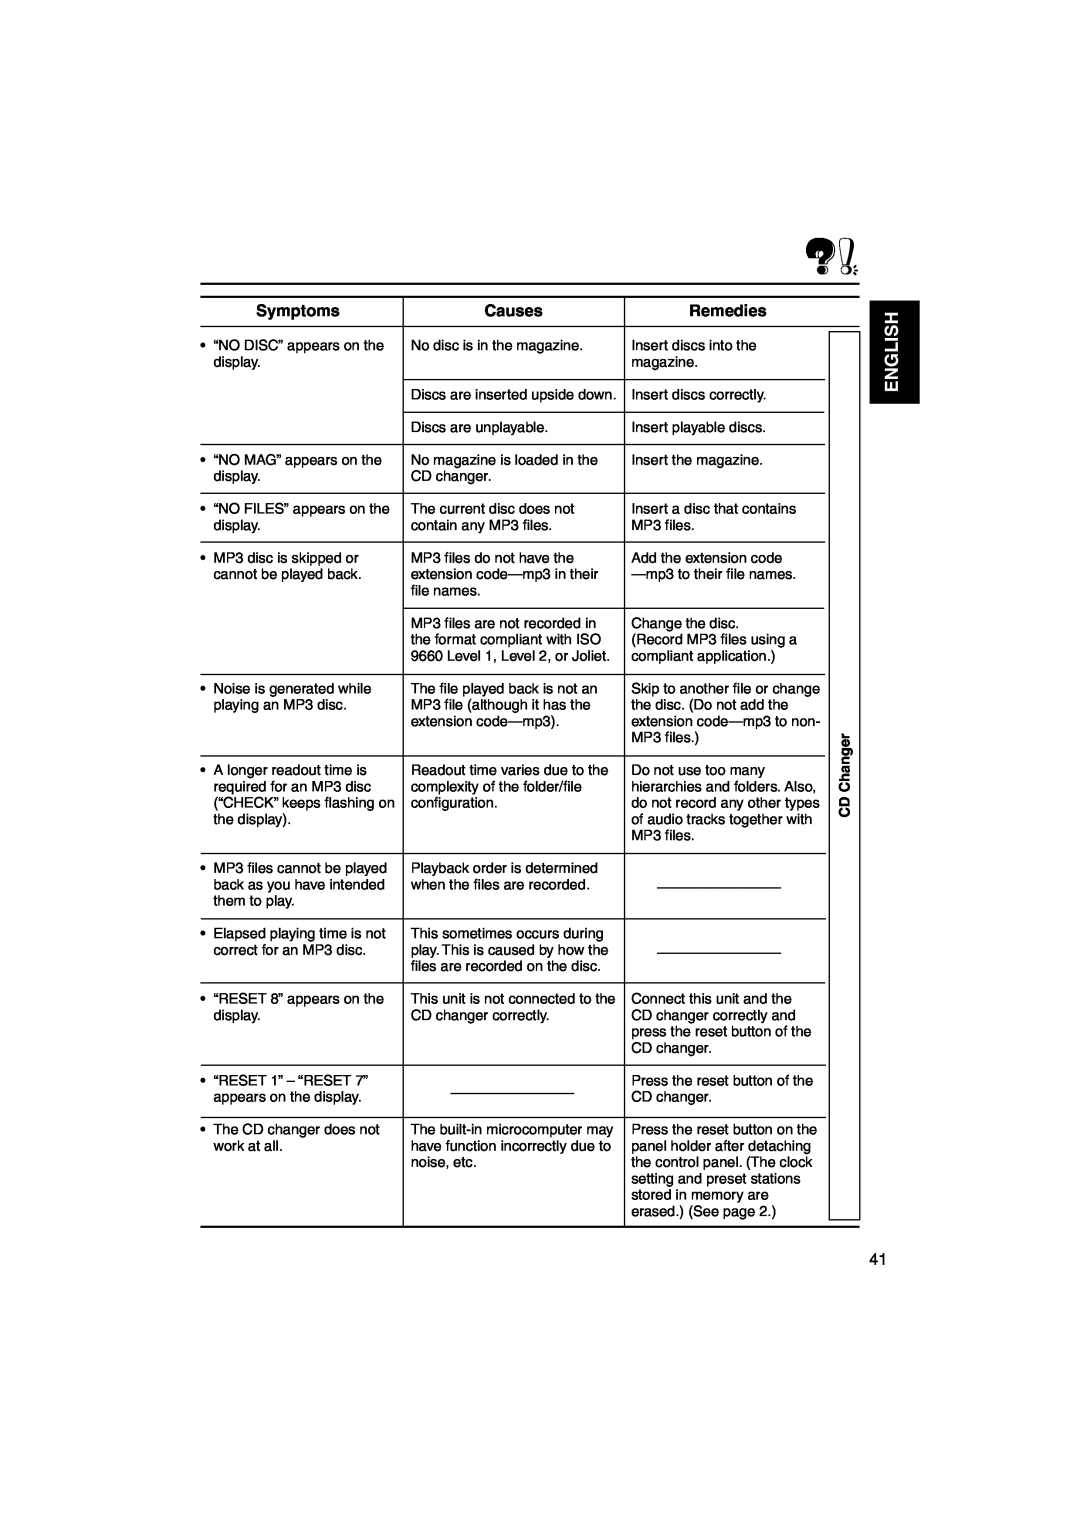 JVC KS-FX942R manual English, Symptoms, Causes, Remedies 